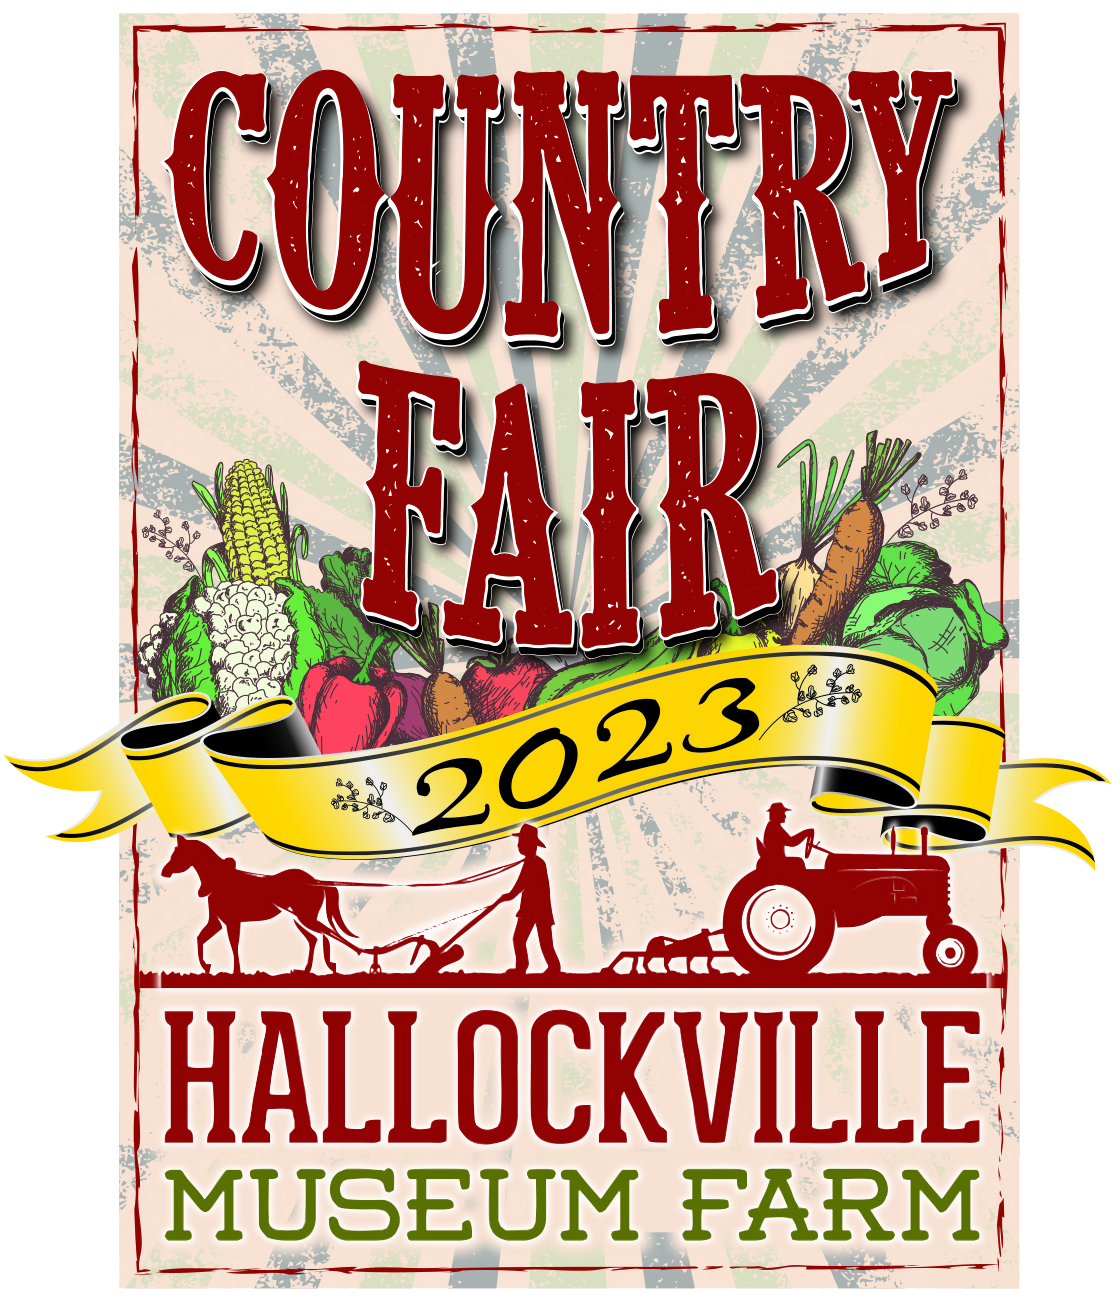 Home - Country Fair